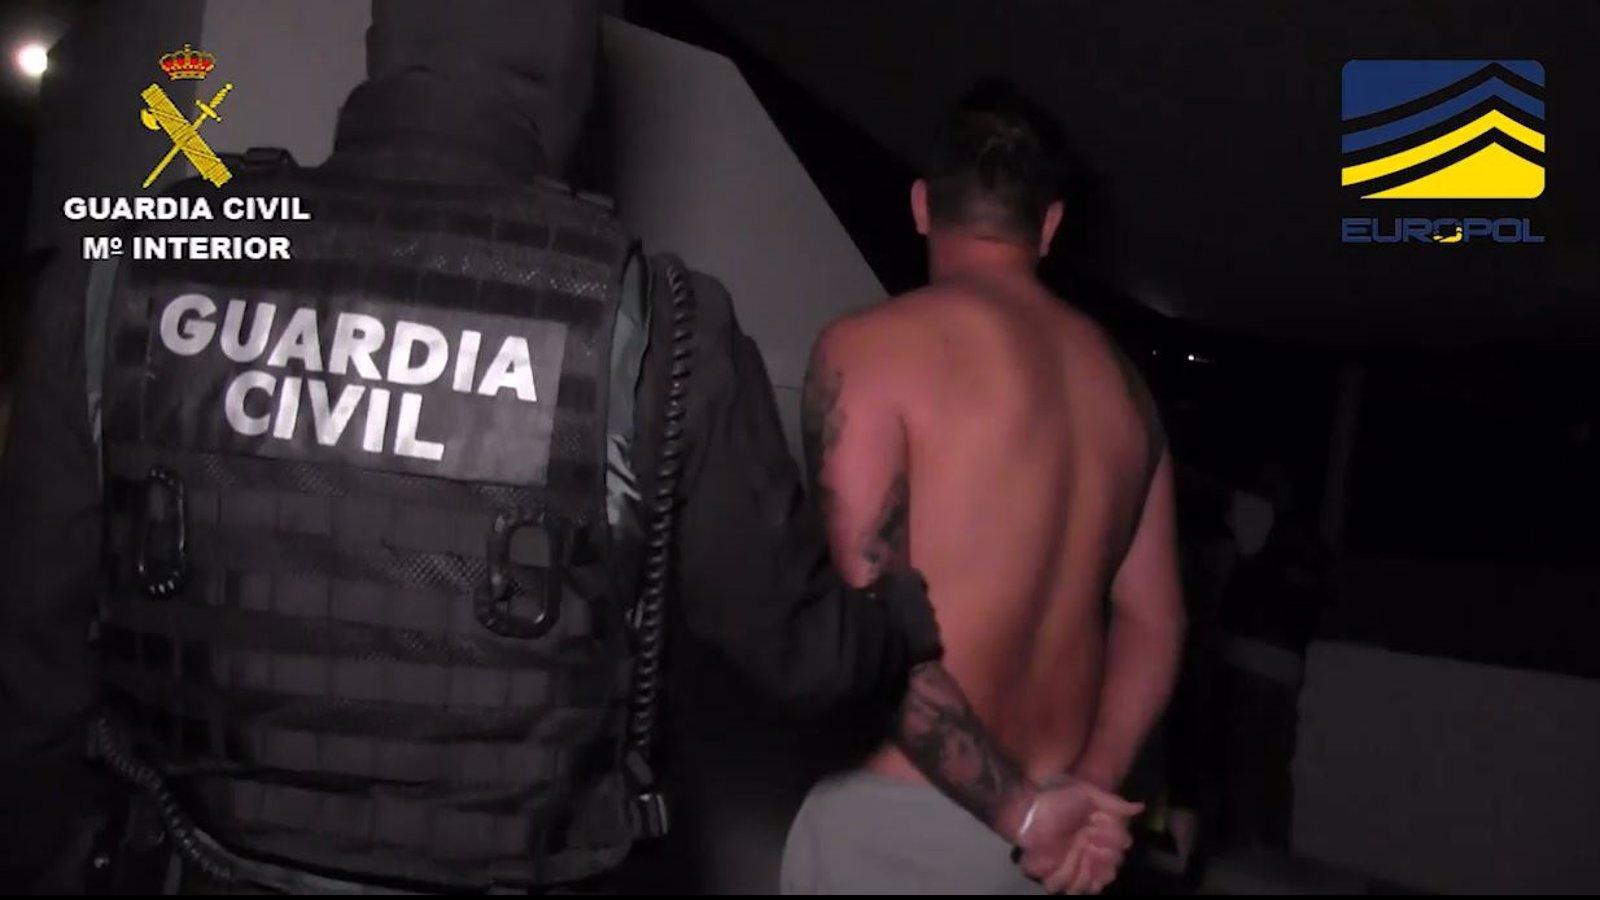 Cae un cártel que controlaba gran parte del mercado de la cocaína en Europa y detienen a 49 personas, varias en Madrid